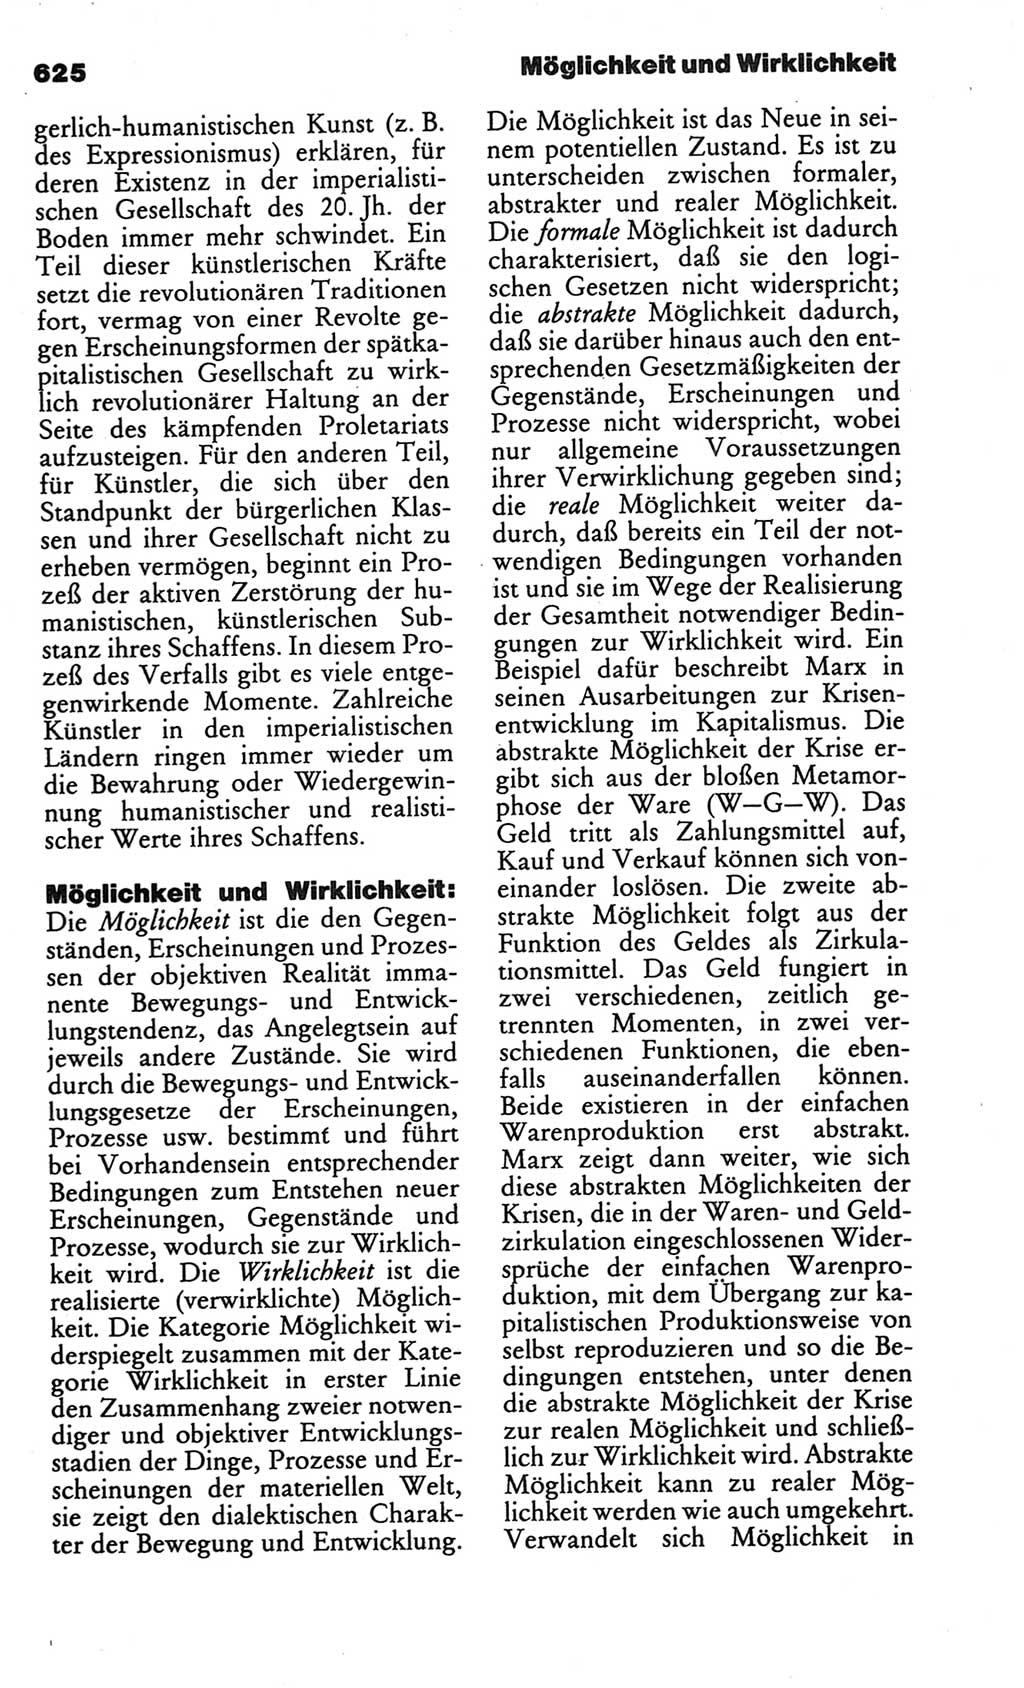 Kleines politisches Wörterbuch [Deutsche Demokratische Republik (DDR)] 1986, Seite 625 (Kl. pol. Wb. DDR 1986, S. 625)